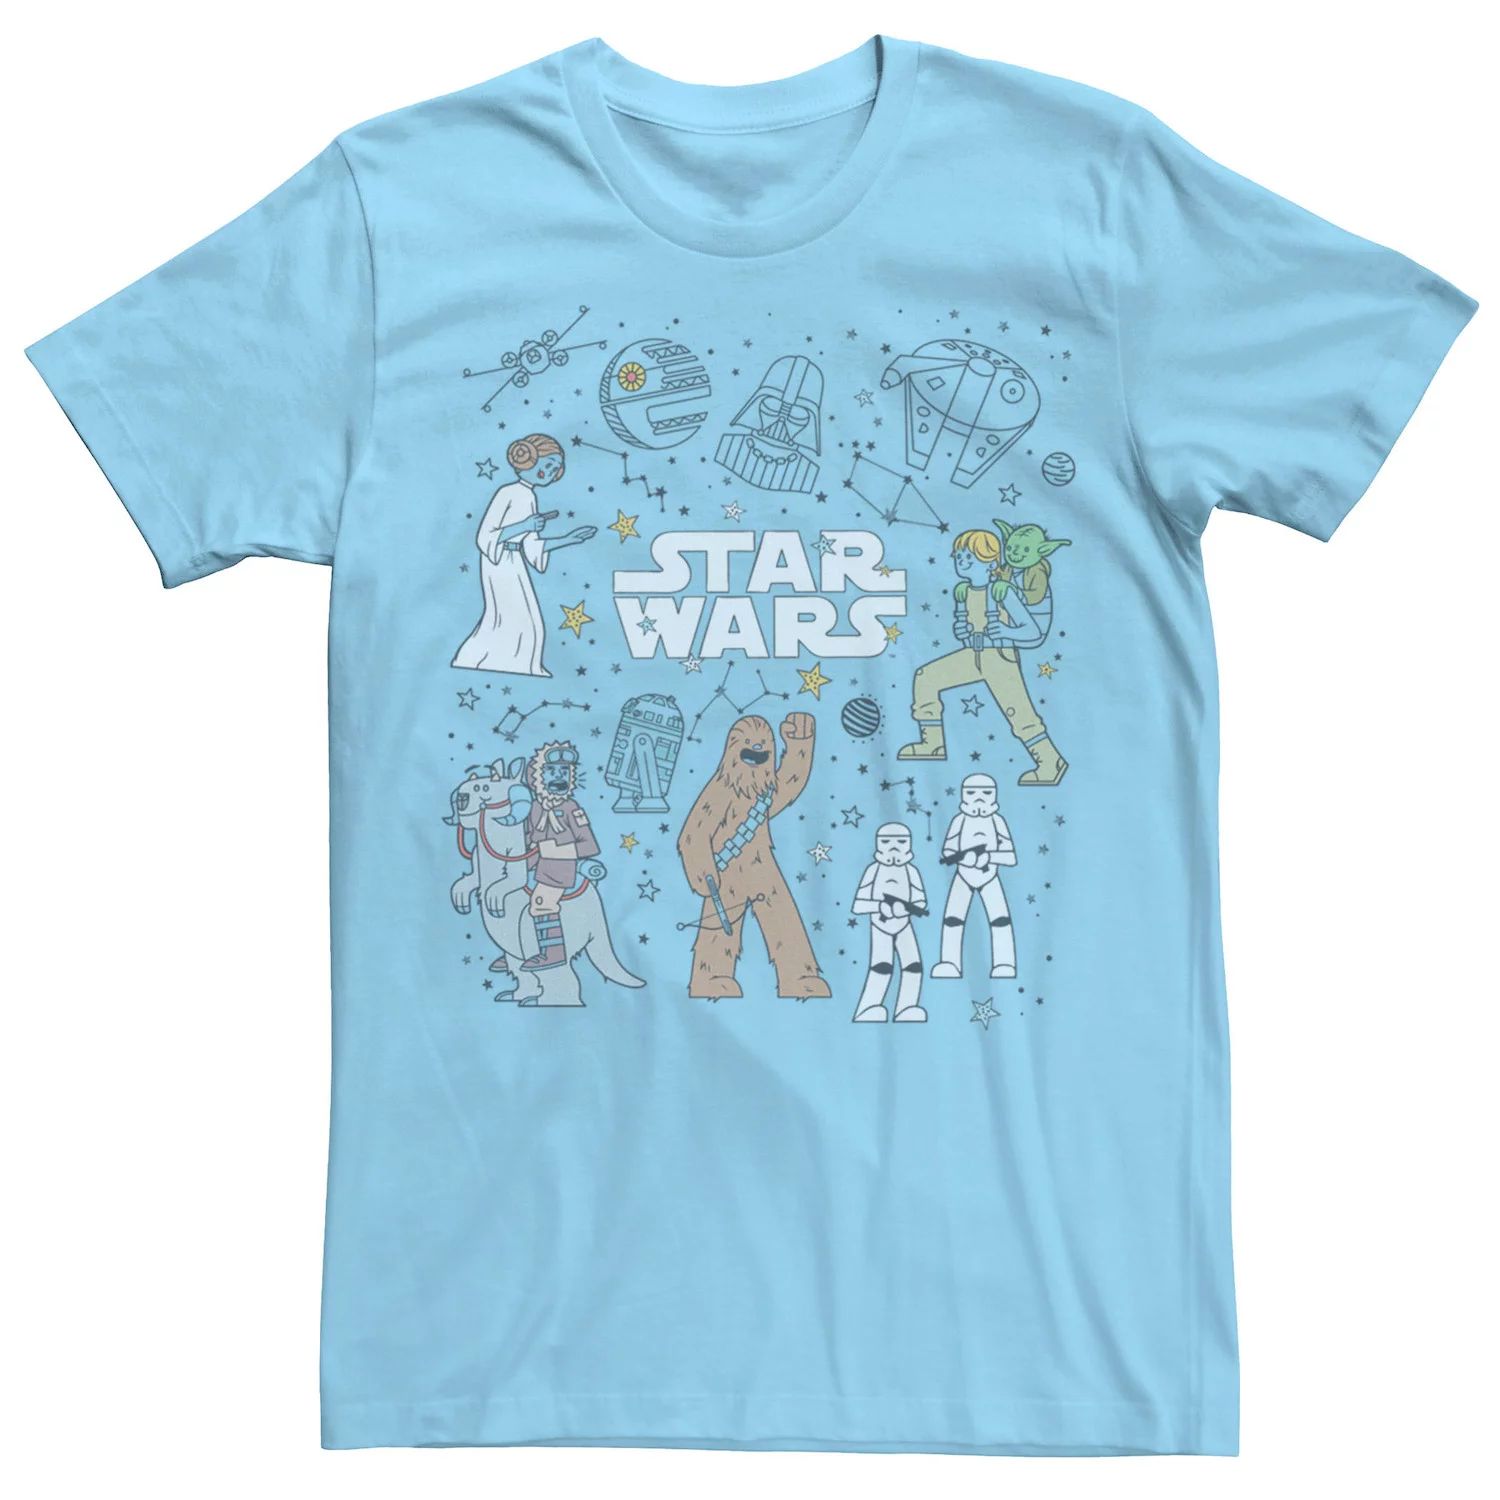 цена Мужская футболка с рисунками «Звездные войны» и «Созвездие» Star Wars, светло-синий